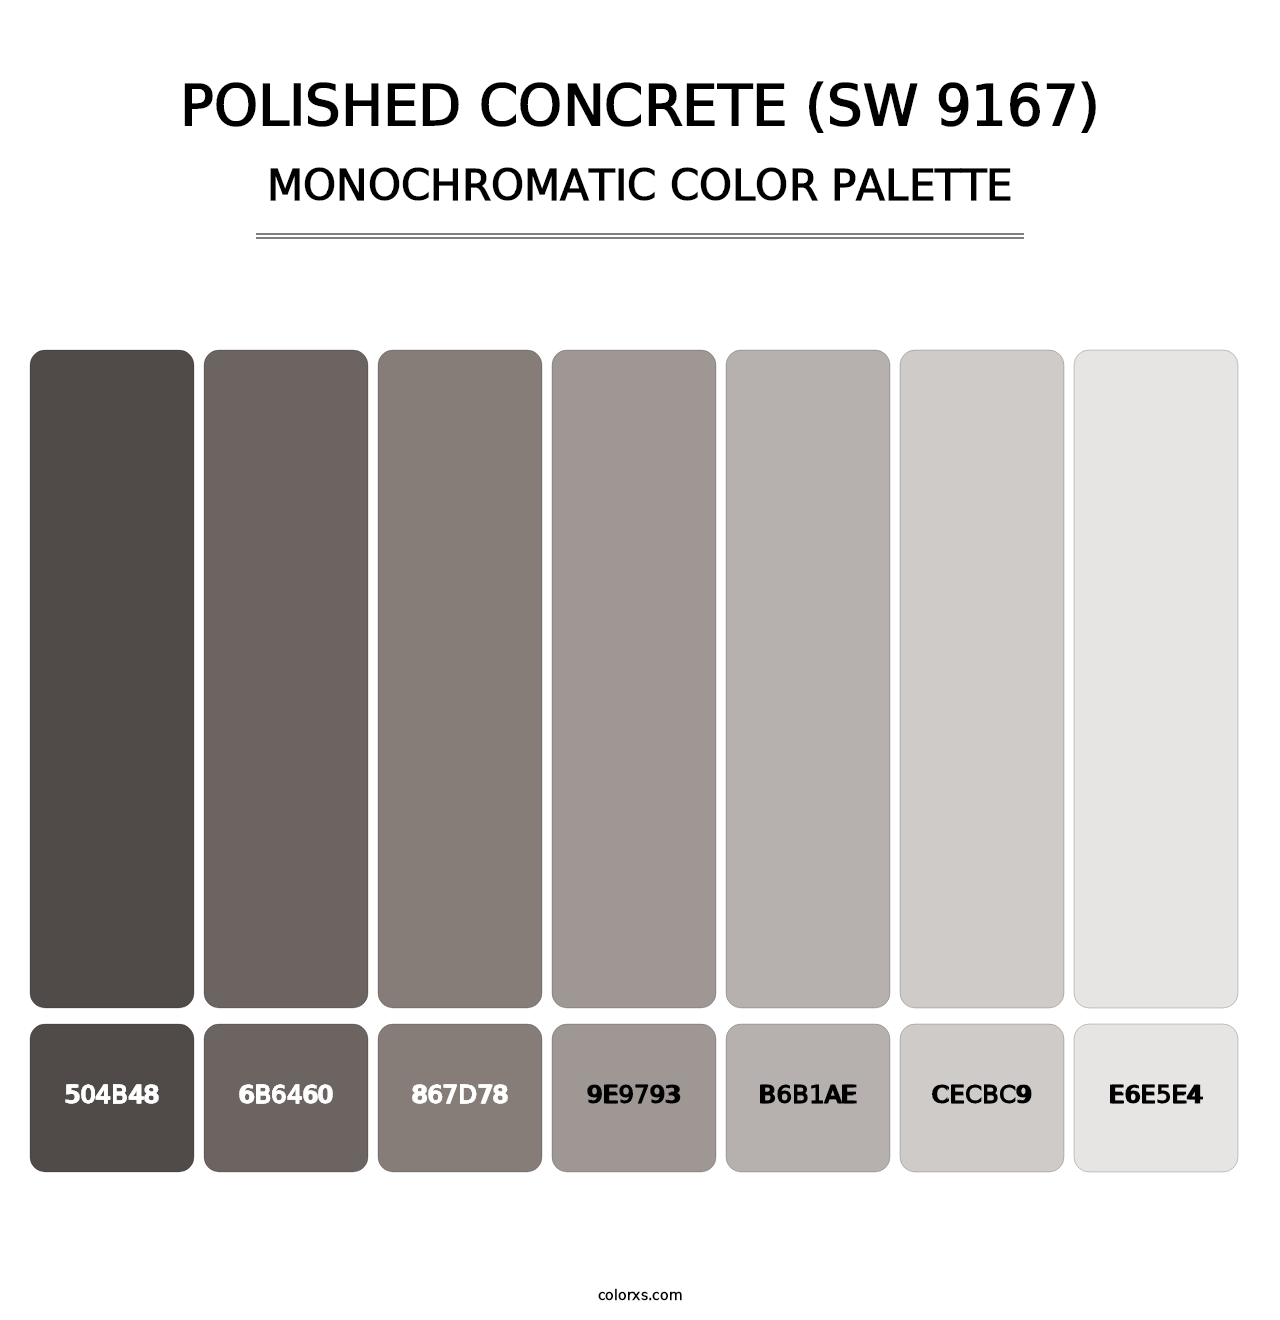 Polished Concrete (SW 9167) - Monochromatic Color Palette